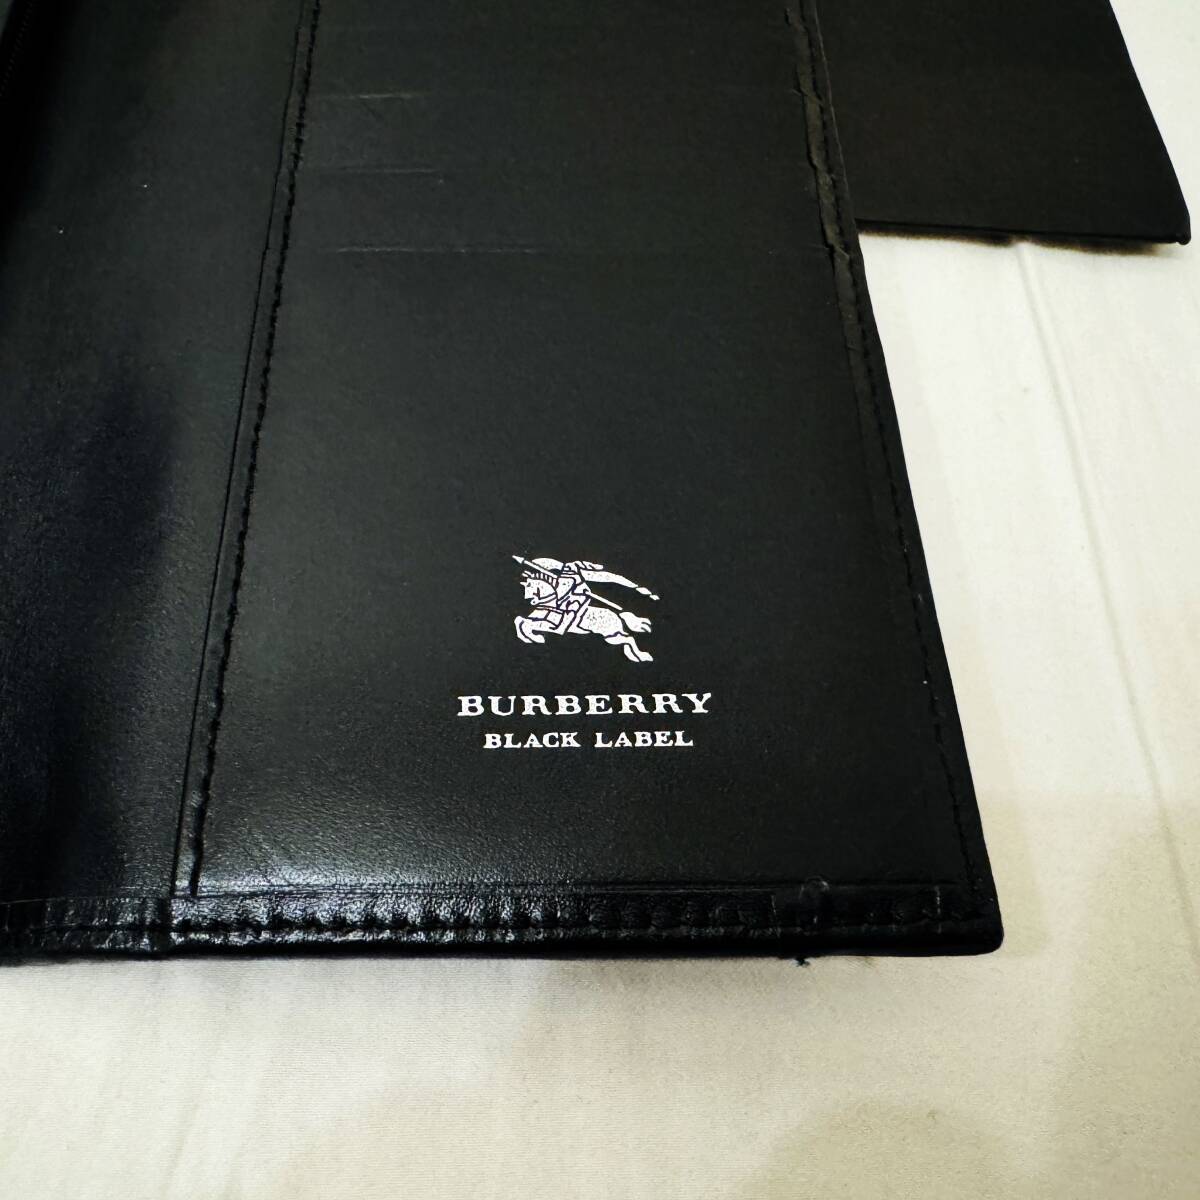  новый товар не использовался очень редкий BURBERRY BLACK LABEL Burberry Black Label длинный кошелек парусина натуральная кожа монограмма шланг Mark серый чёрный #2755